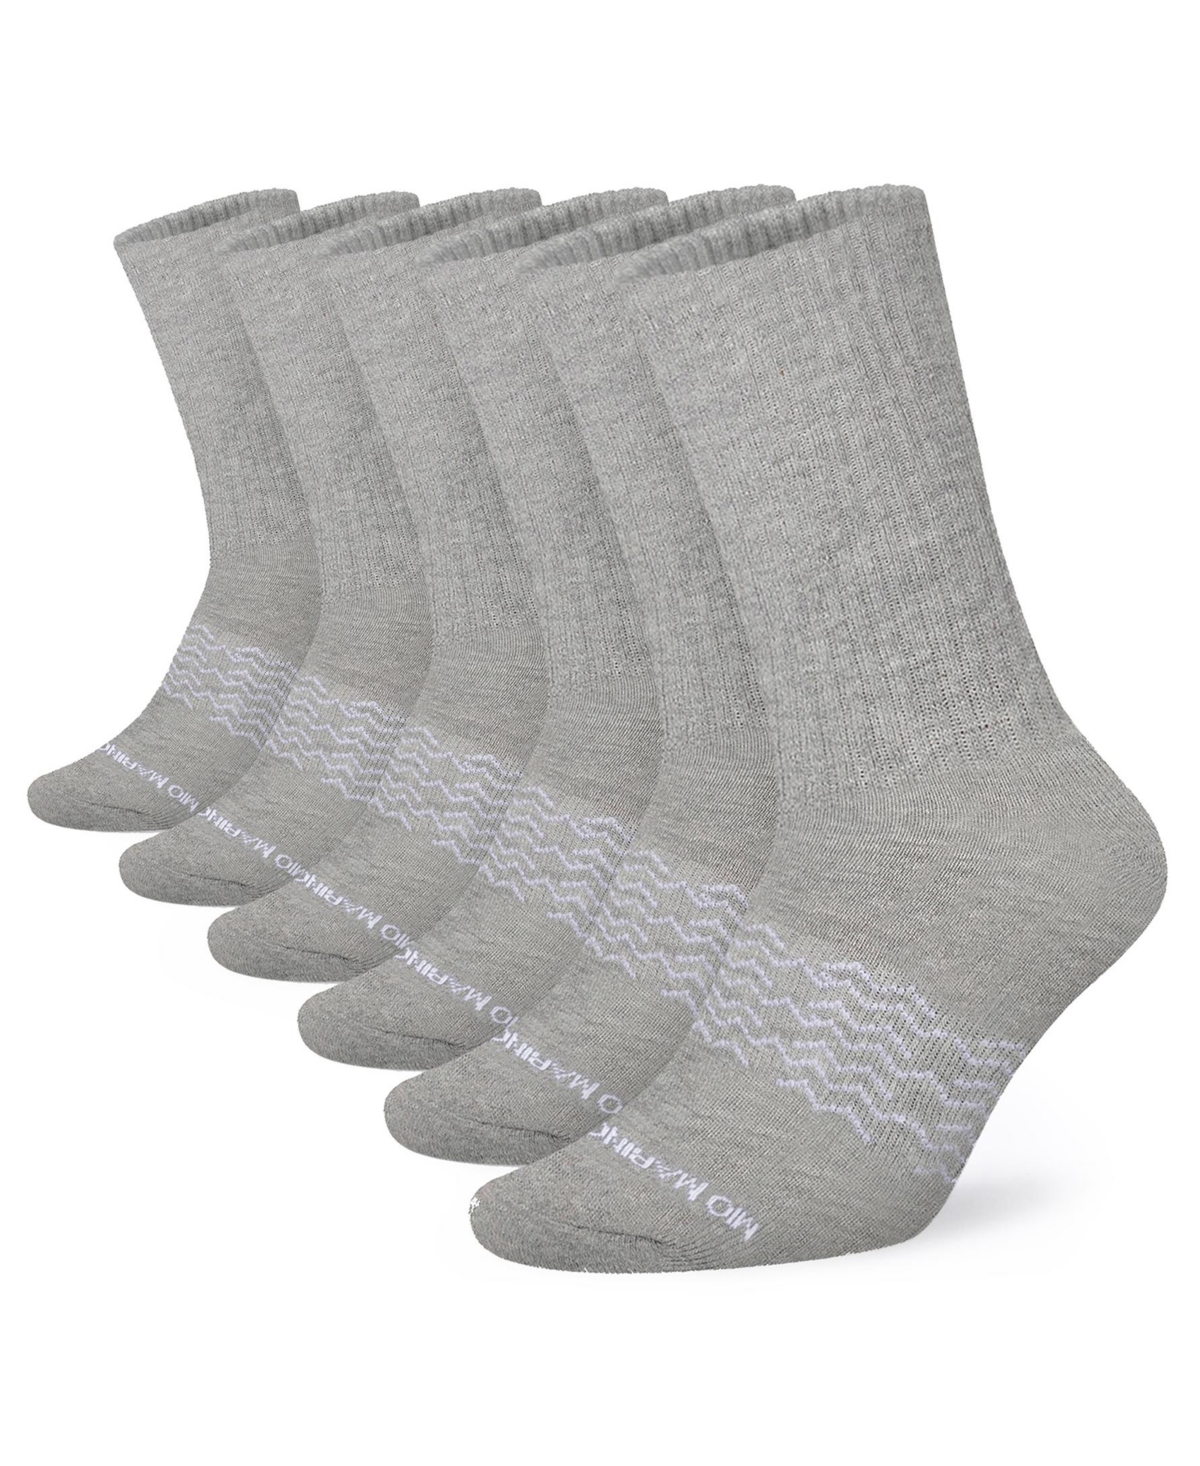 Men's Moisture Control Athletic Crew Socks 6 Pack - Gray - melange